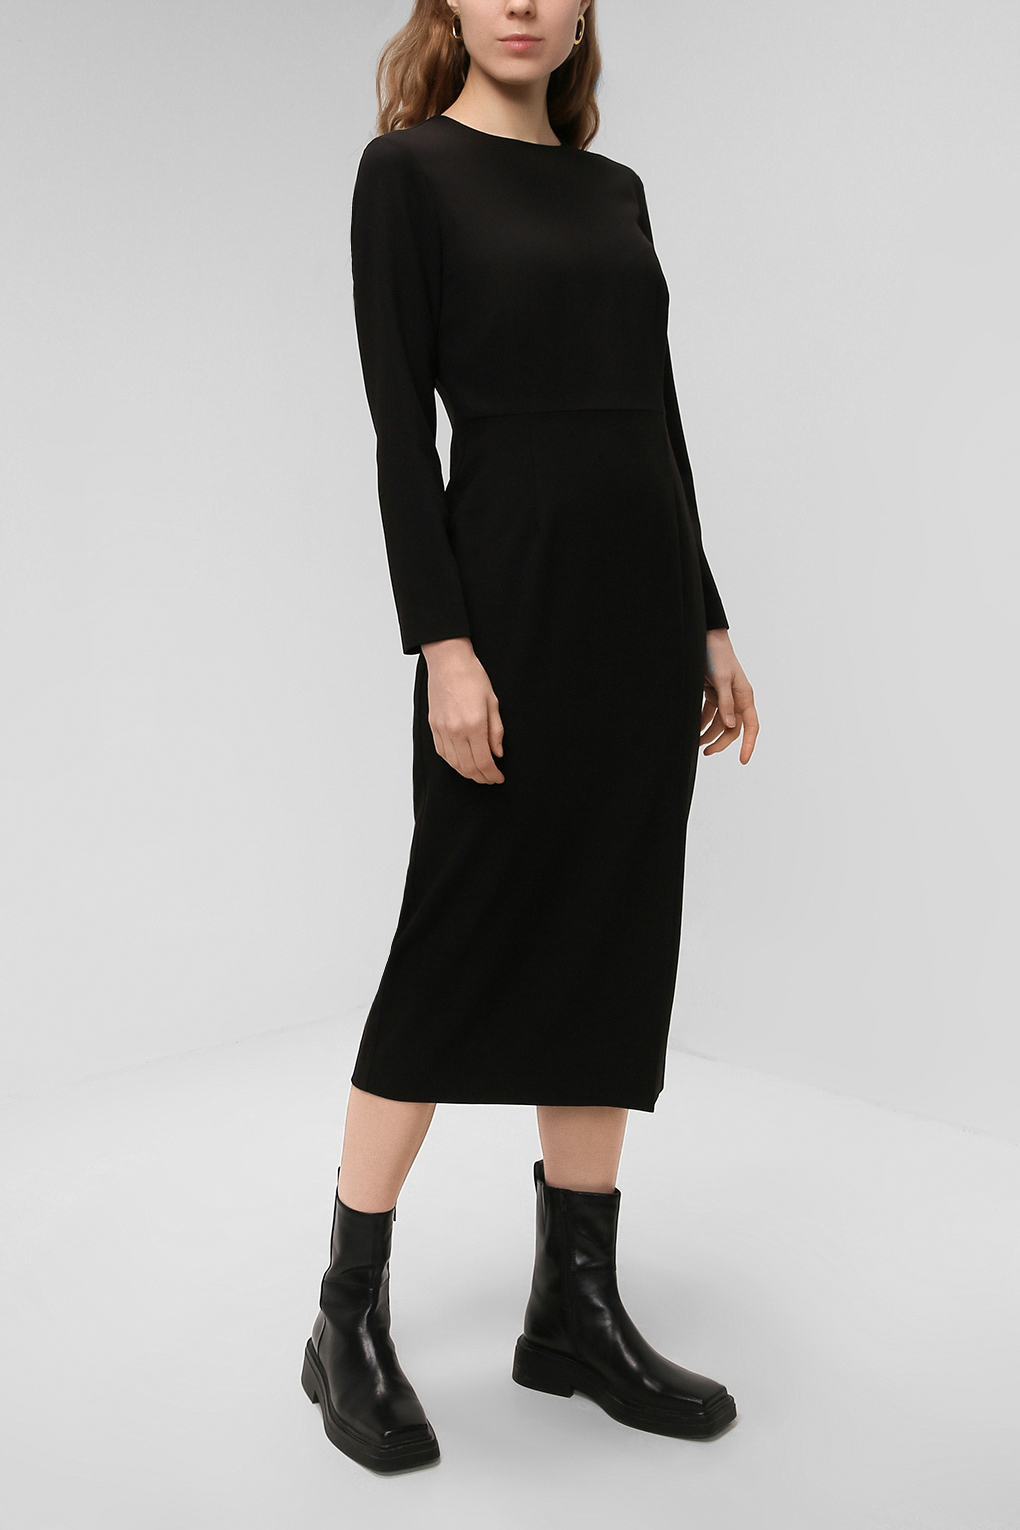 фото Платье женское paola ray pr221-3065 черное m